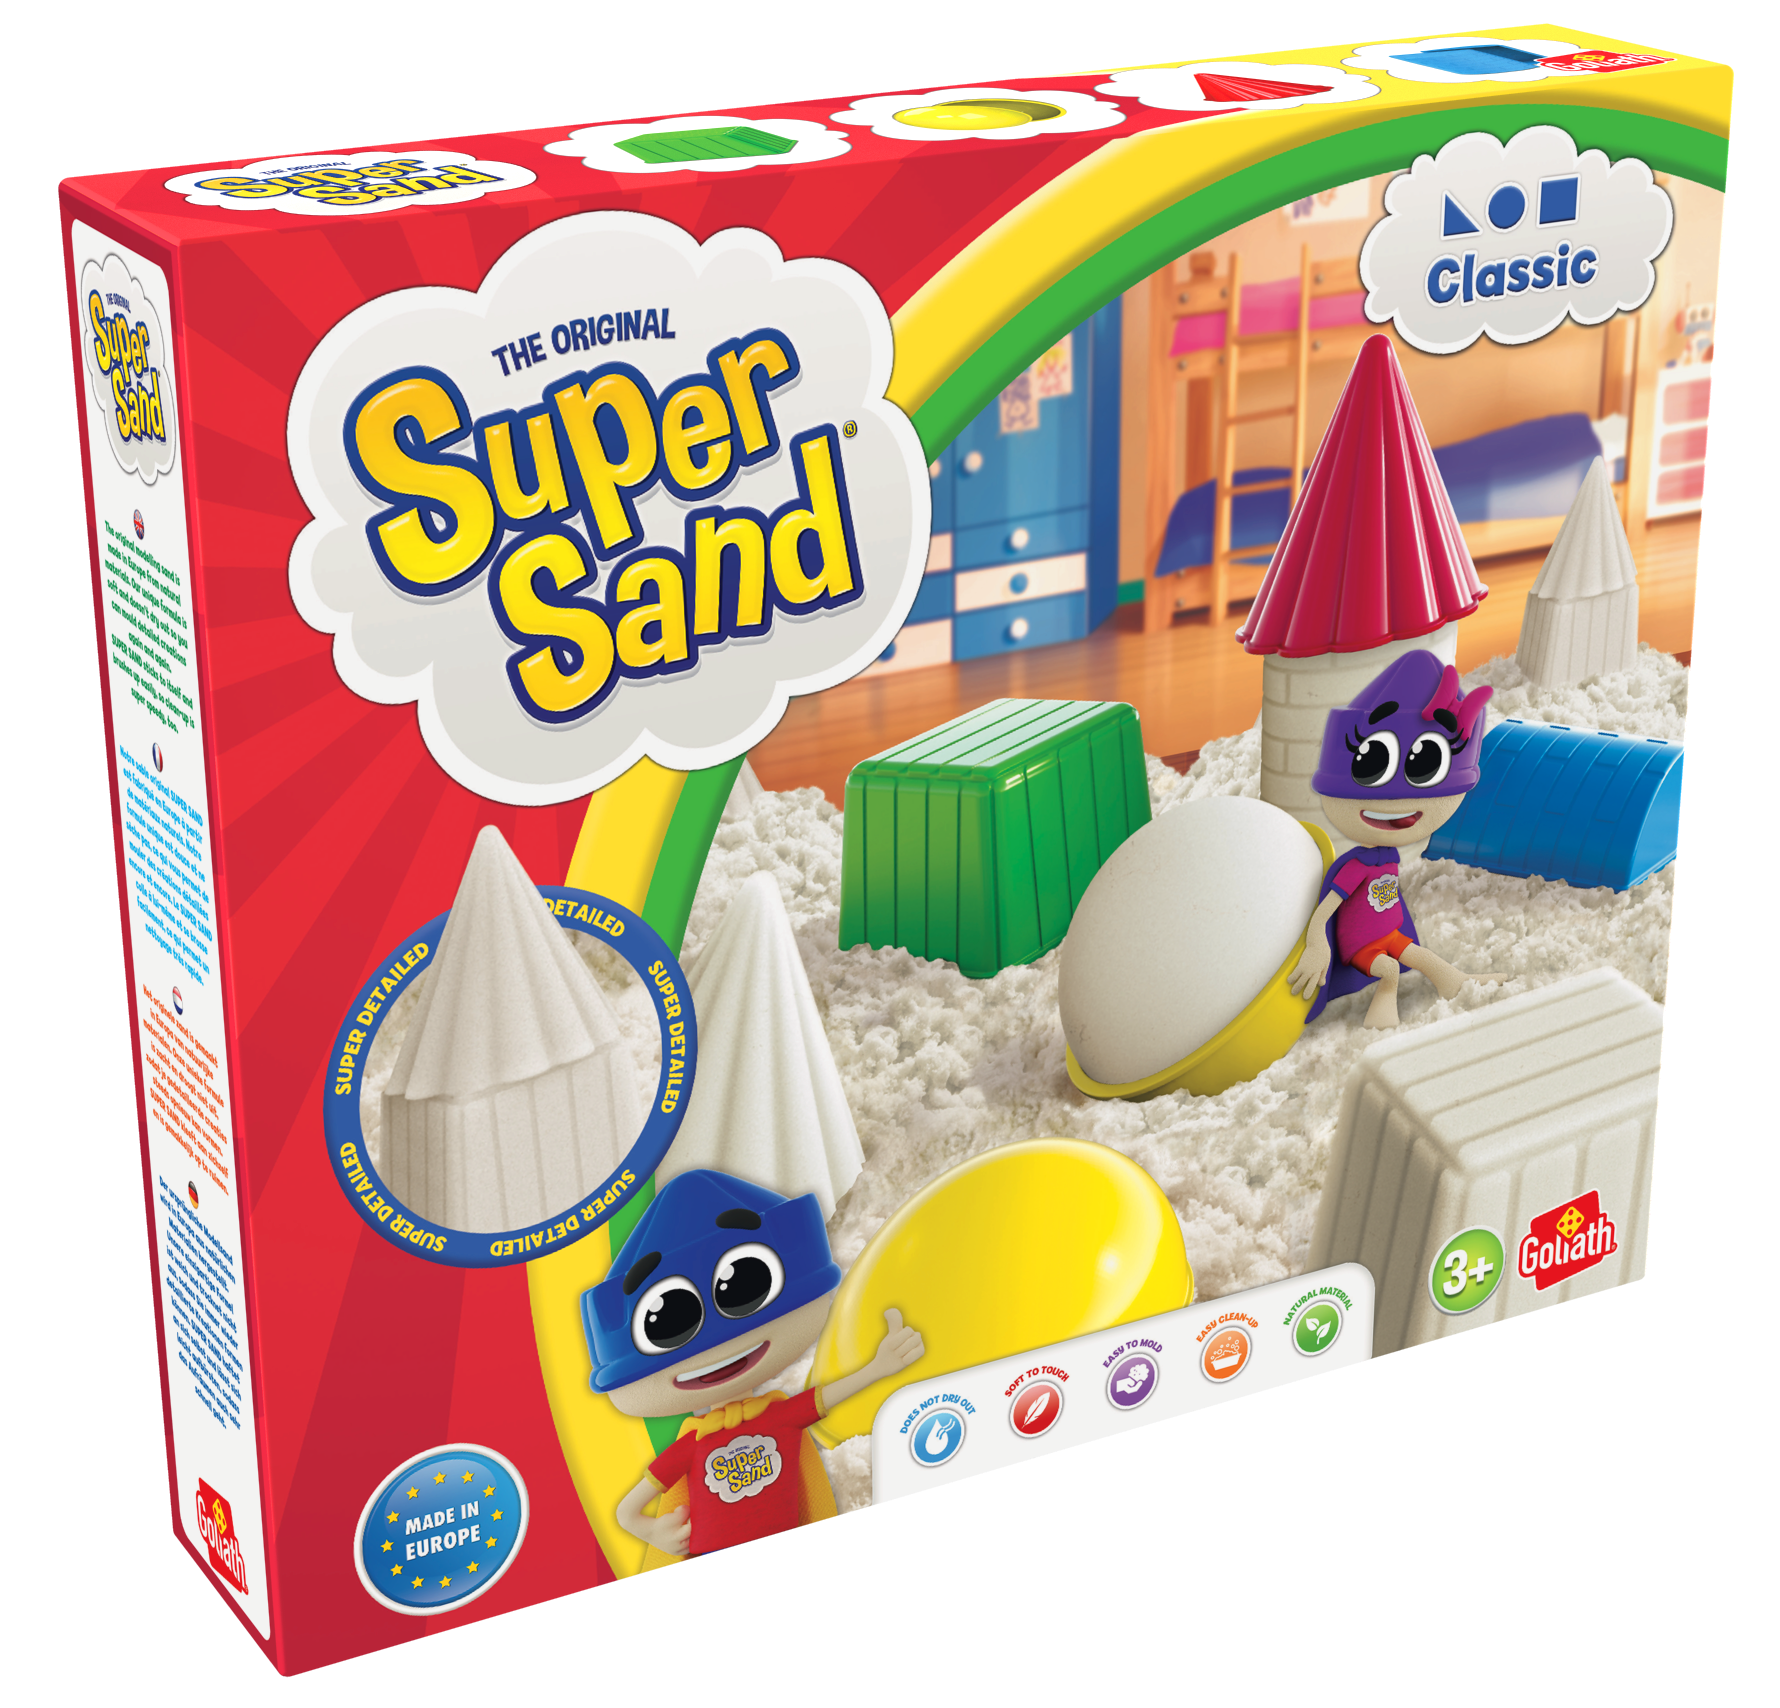 De doos van Super Sand Classic vanuit een linkerhoek